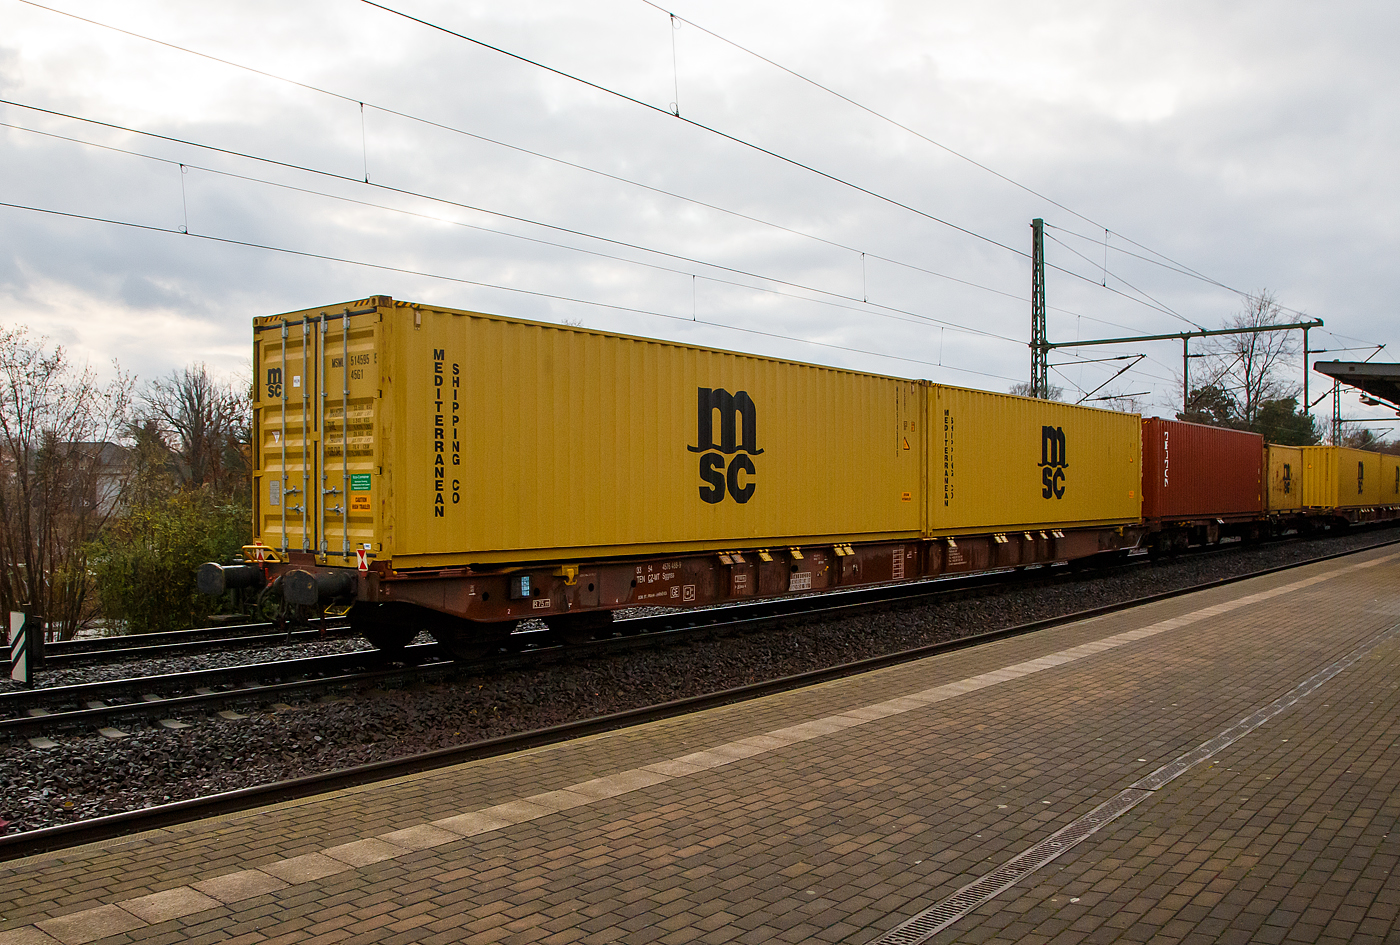 4-achsiger Drehgestell-Containertragwagen 33 54 4576 488-9 CZ-MT, der Gattung Sggnss 80ft (Sggnss-XL), der METRANS Rail s.r.o. (Prag / Praha), am 07.12.2022 im Zugverband, beladen mit zwei 40ft-Containern bei einer Zugdurchfahrt in Dresden-Strehlen.

Mit dem Containertragwagen der Bauart Sggnss 80´ ist es erstmals möglich Container mit einer Gesamtlänge von 80 Fuß auf einem vierachsigen Drehgestellwagen zu transportieren. Der Wagen hat eine Länge von 25.940 mm und wird von Tatravagonka und Greenbrier Europe gefertigt. Aktuell werden die Sggnss 80´ u.a. bei Metrans, VTG, Boxxpress, RailCargoAustria, SETG, GATX und der StlB eingesetzt.

Die METRANS ist ein 100 %-iges Tochterunternehmen der Hamburger Hafen und Logistik AG (HHLA). Sie ist Marktführer für Containertransporte im Seehafenhinterlandverkehr mit Mittel-, Ost- und Südosteuropa. Eigene Inland-Terminals, spezielle Loks  und umweltfreundliche Containertragwagen ermöglichen flexible, qualitativ hochwertige Angebote.

TECHNISCHE DATEN:
Spurweite: 1 435 mm
Anzahl der Achsen: 4 in zwei Drehgestellen
Länge über Puffer: 25.940 mm
Drehzapfenabstand: 19.300 mm
Achsabstand im Drehgestell: 1.800mm
Laufraddurchmesser: 920 mm (neu)
Drehgestelltyp: 	Y25Ls1-K
Ladelänge : 24 700 mm  (z.B. 2 x 40’ ISO Container)
Höhe der Ladeebene über SOK: 1.155 mm
Höchstgeschwindigkeit: 100 km/h (Lastgrenze SS und leer 120 km/h)
Max. Zuladung bei Lastgrenze S: 68,5 t (ab Streckenklasse D)
Max. Zuladung bei Lastgrenze SS: 58,5 t (ab Streckenklasse C)
Eigengewicht: 21.500 kg
Kleinster bef. Gleisbogenradius: R 75 m
Bauart der Bremse: KE-GP-A (K)
Bremssohle: Jurid 816M
Intern. Verwendungsfähigkeit: TEN-GE
